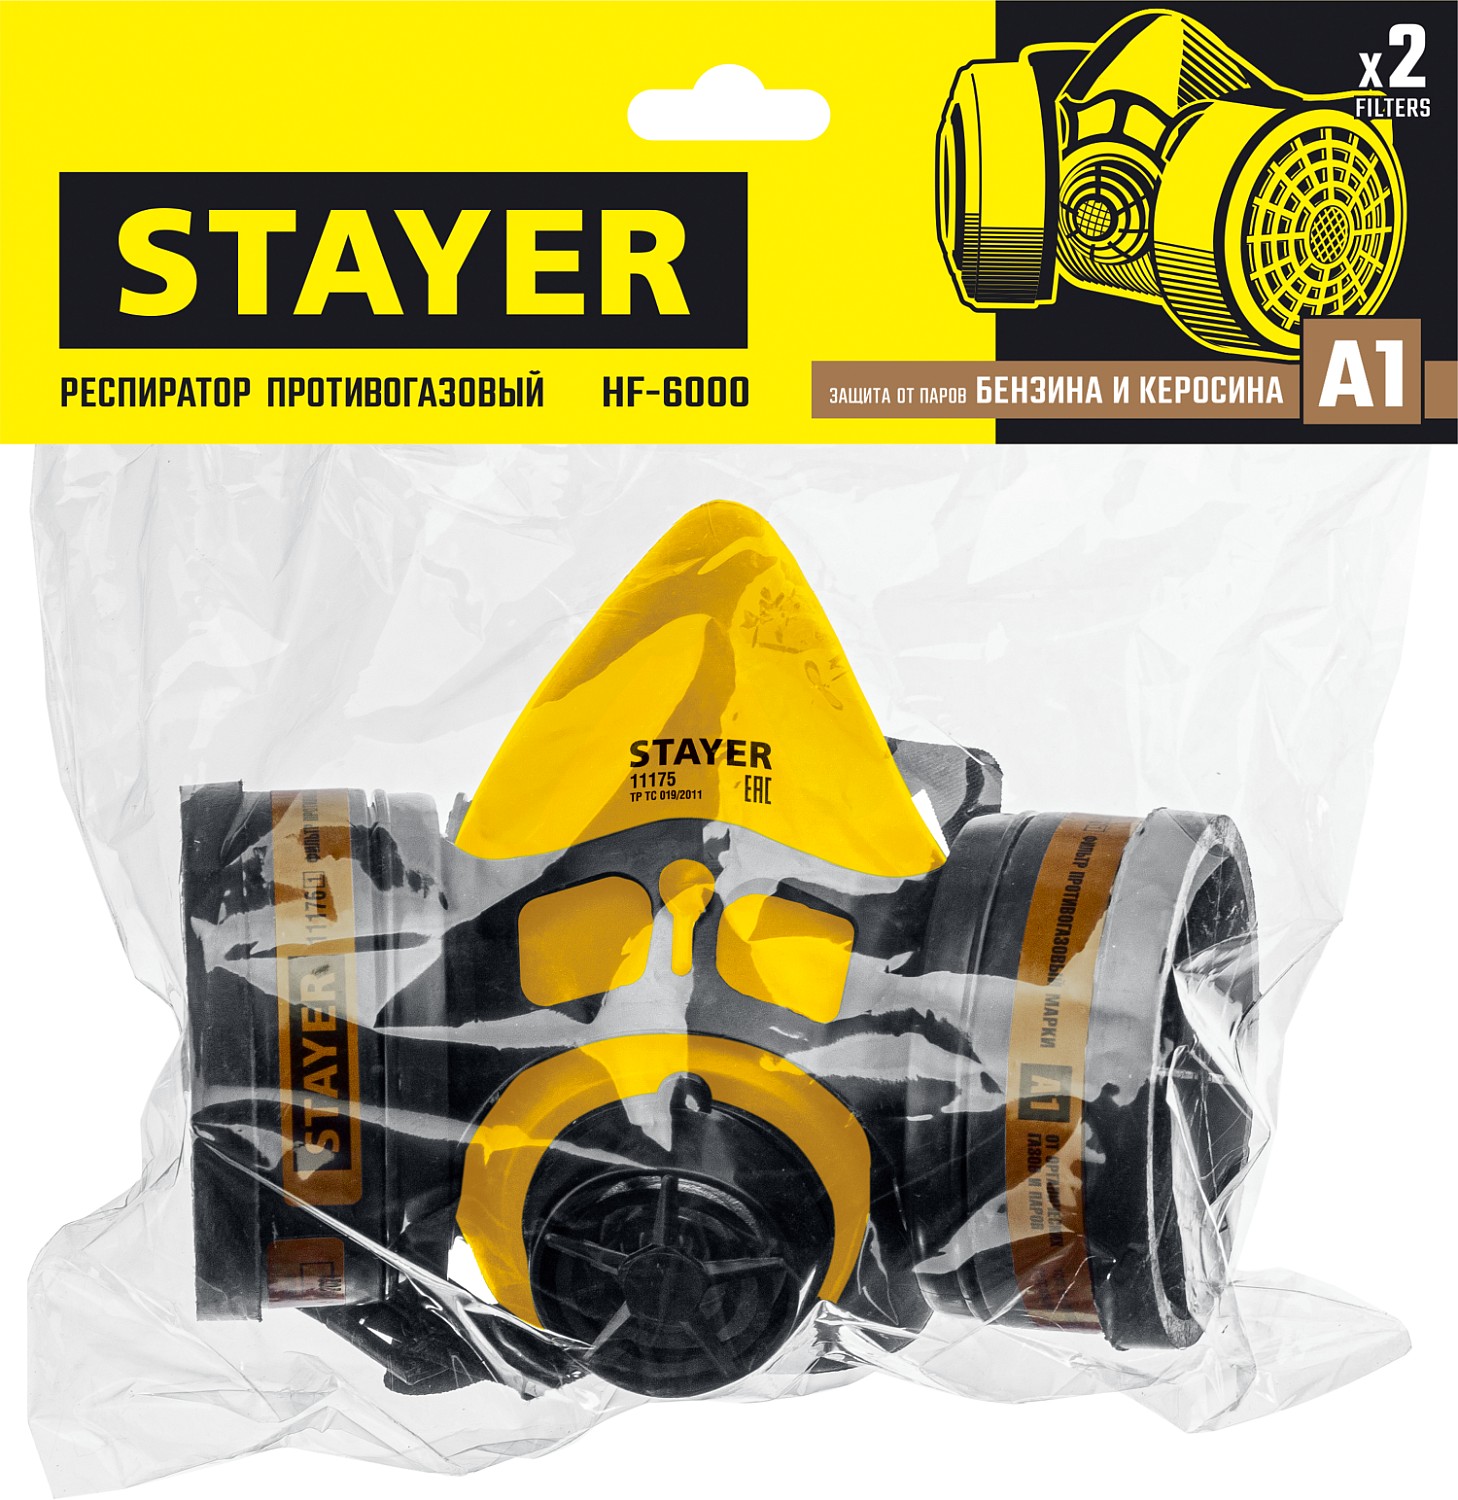 STAYER HF-6000, два фильтра A1 в комплекте, респиратор противогазовый, Professional (11175)